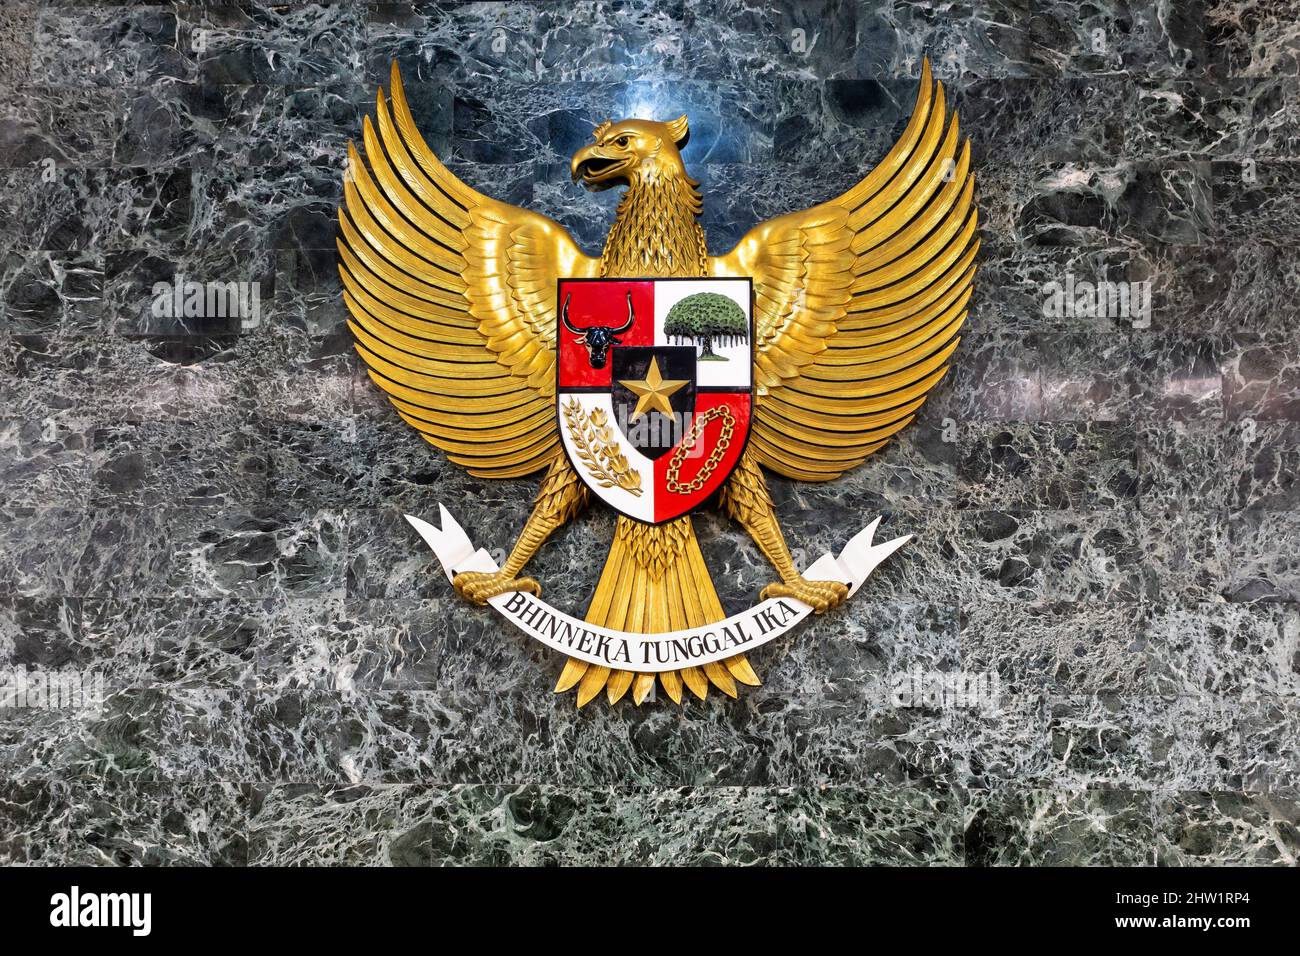 Garuda Pancasila, the national emblem of Indonesia. The Indonesian national symbol exhibited at Merdeka Square Stock Photo